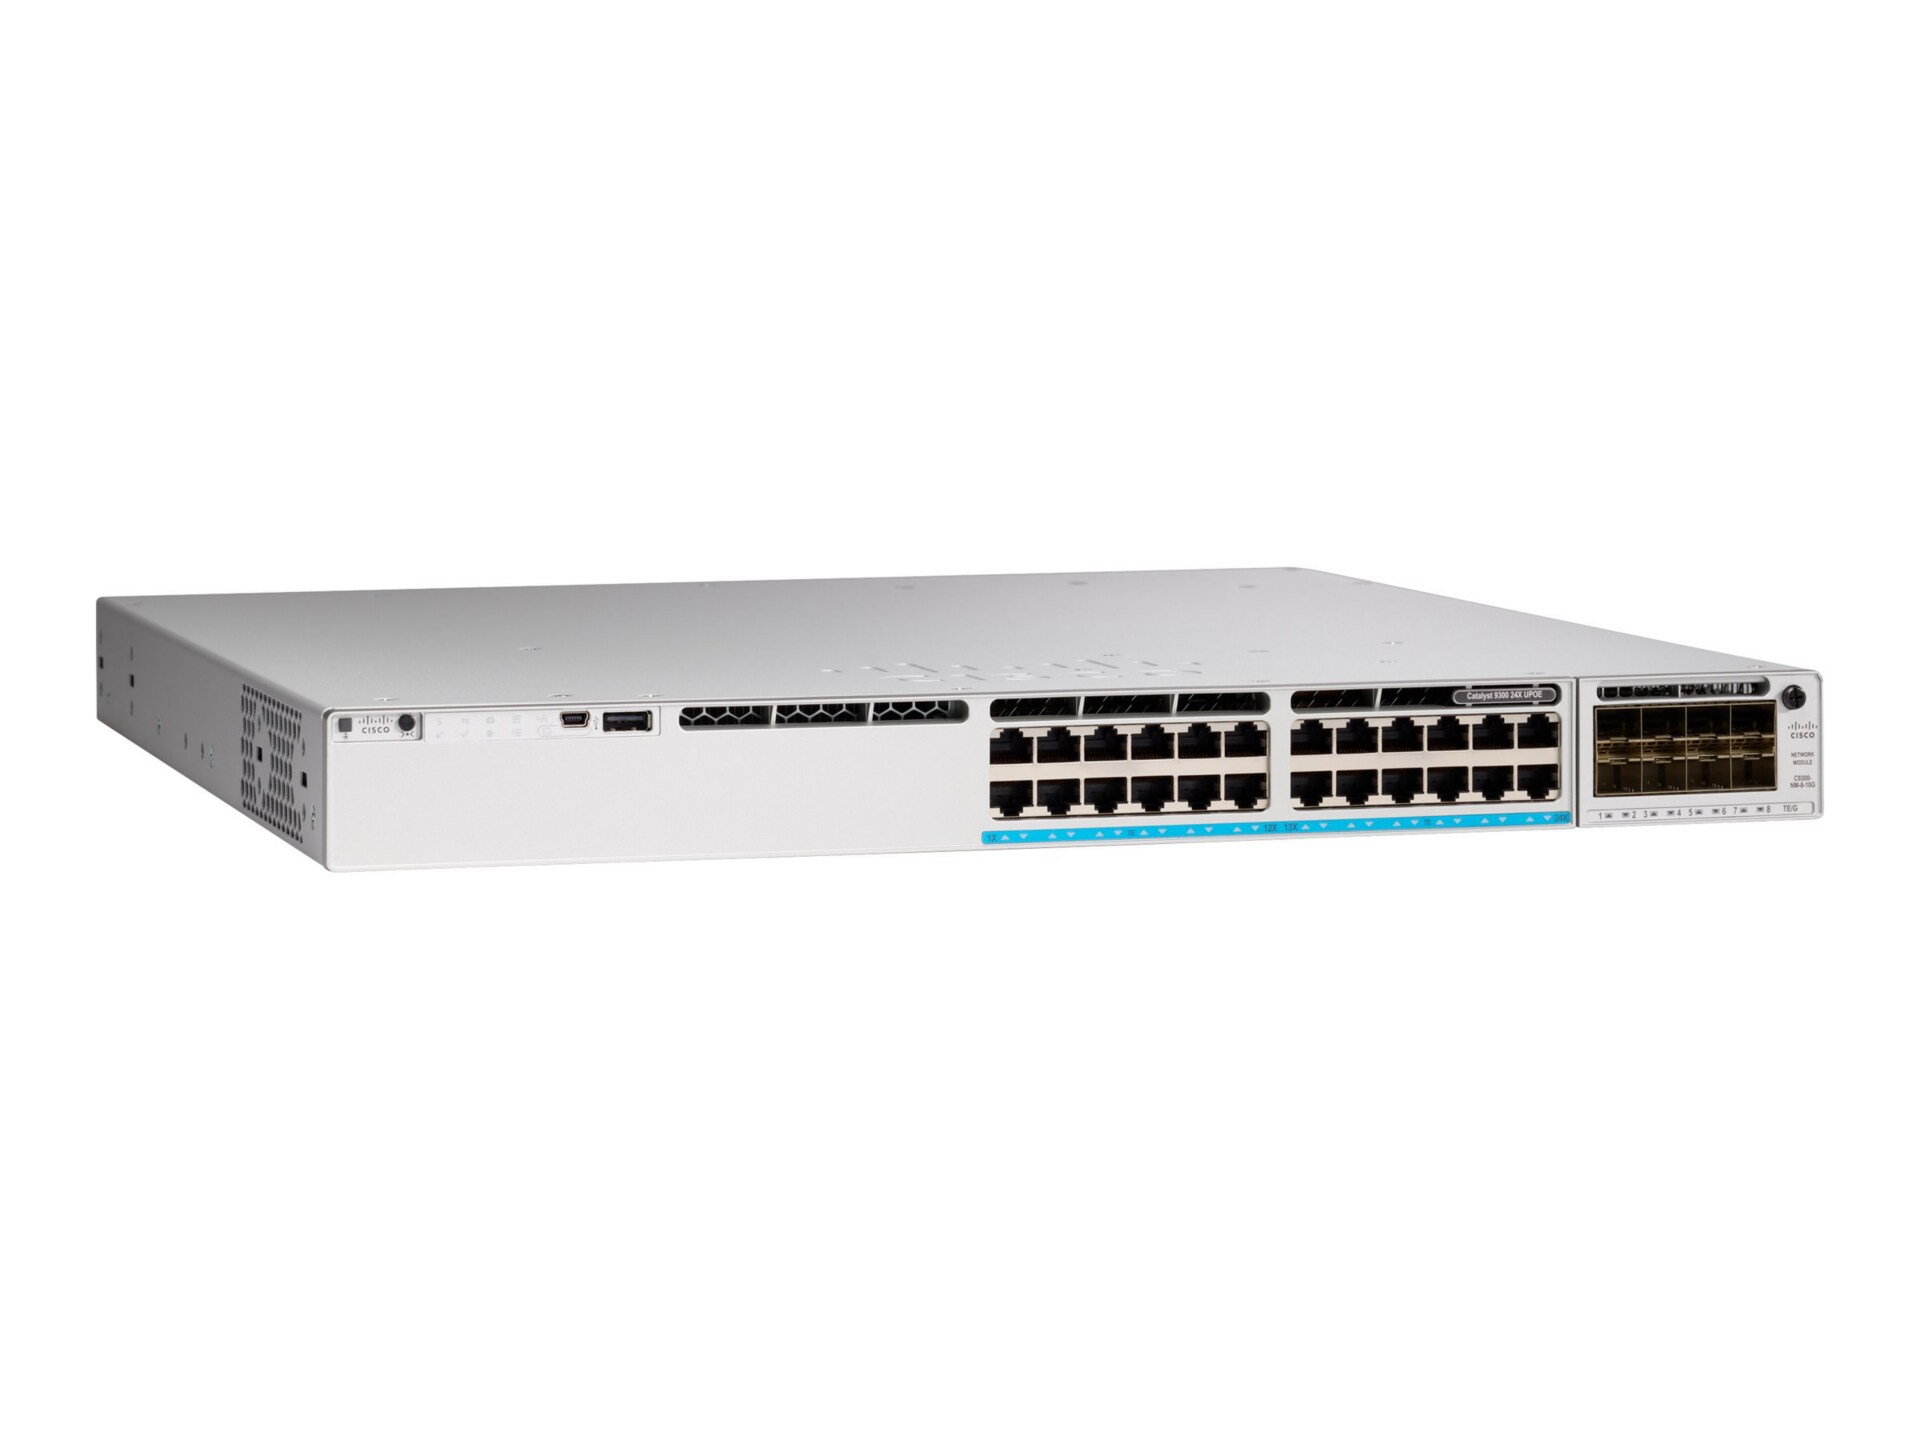 Cisco Meraki Catalyst 9300-24UX - switch - 24 ports - managed - rack-mountable